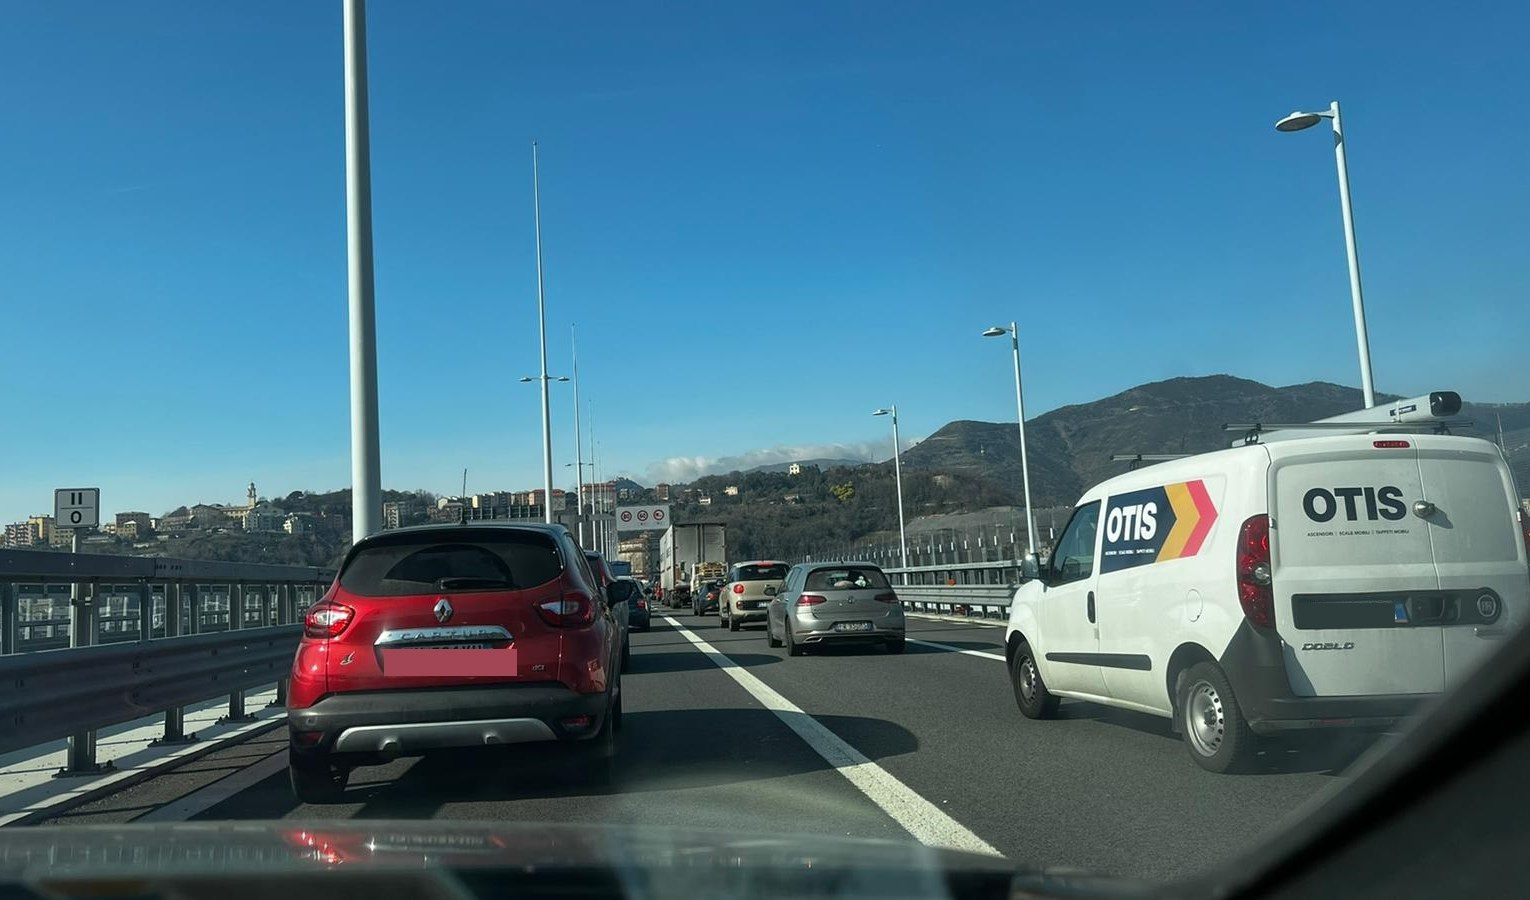 Caos autostrade: incidente sul ponte San Giorgio, traffico in tilt